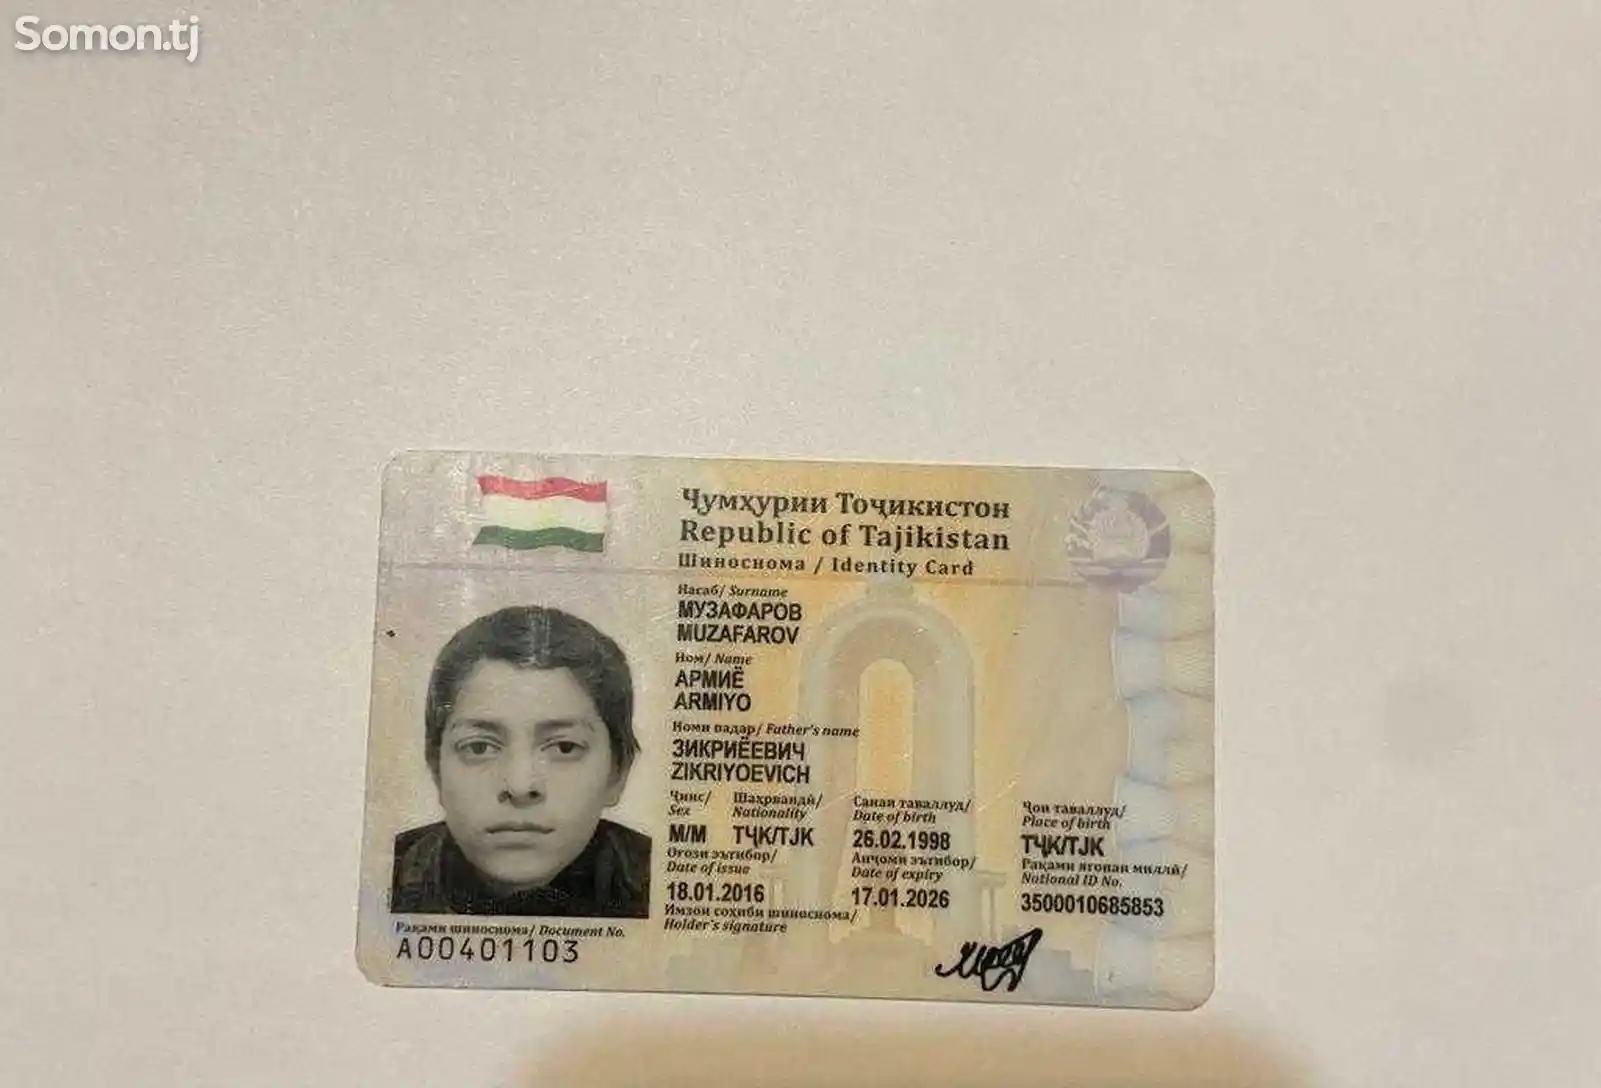 Найден паспорт на имя Музафаров Армие Зикриеевич